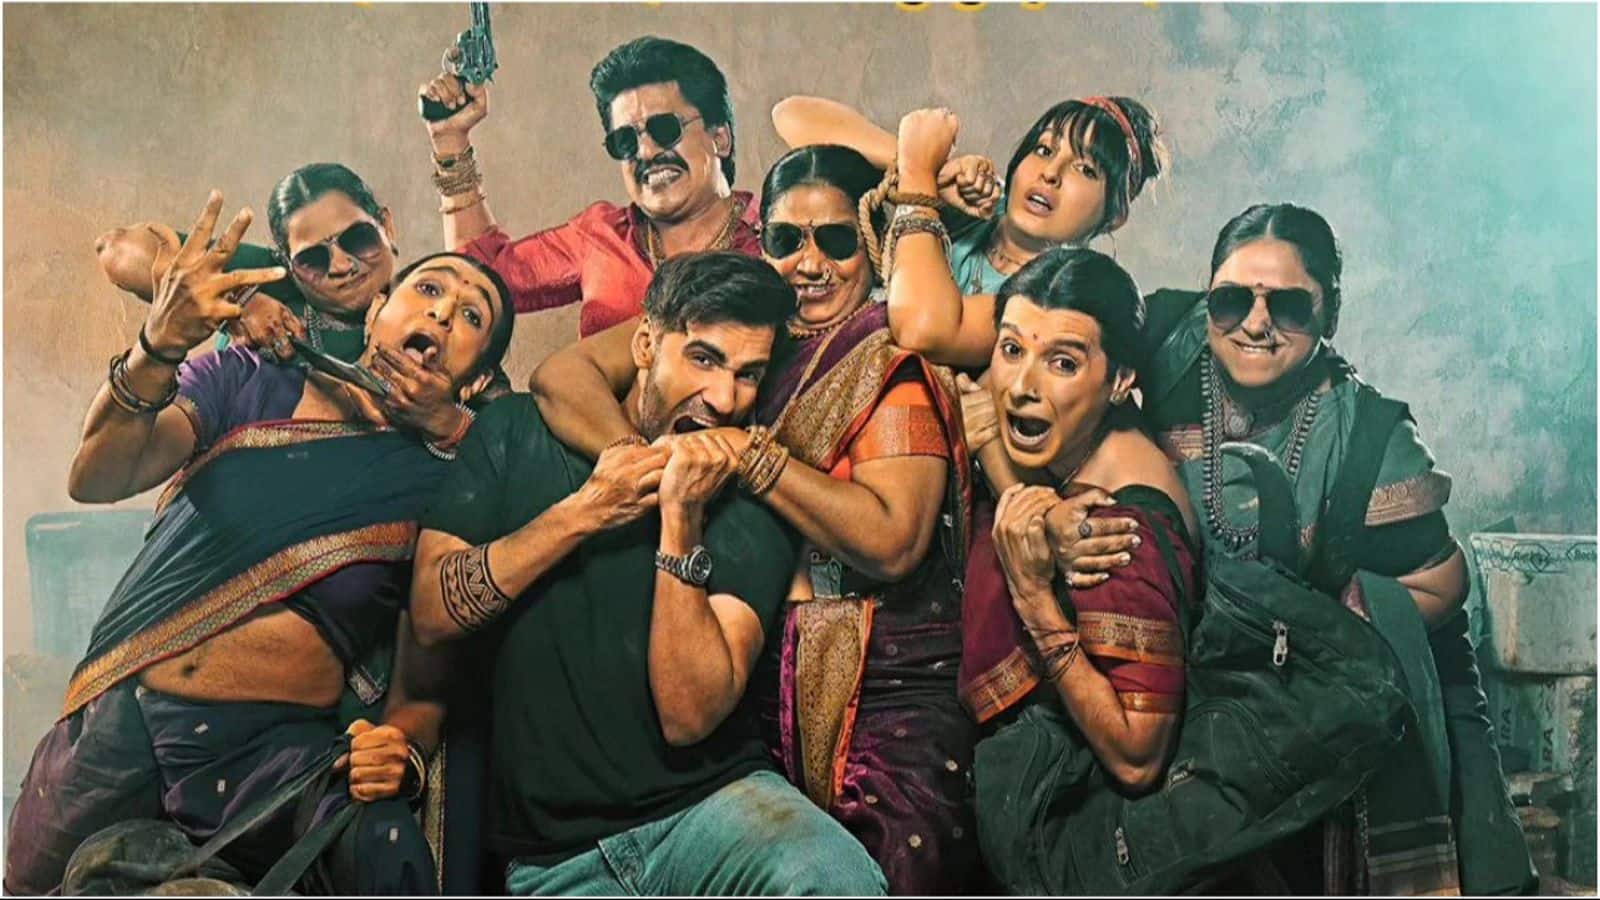 Box office: Kunal Kemmu's 'Madgaon Express' picks up pace